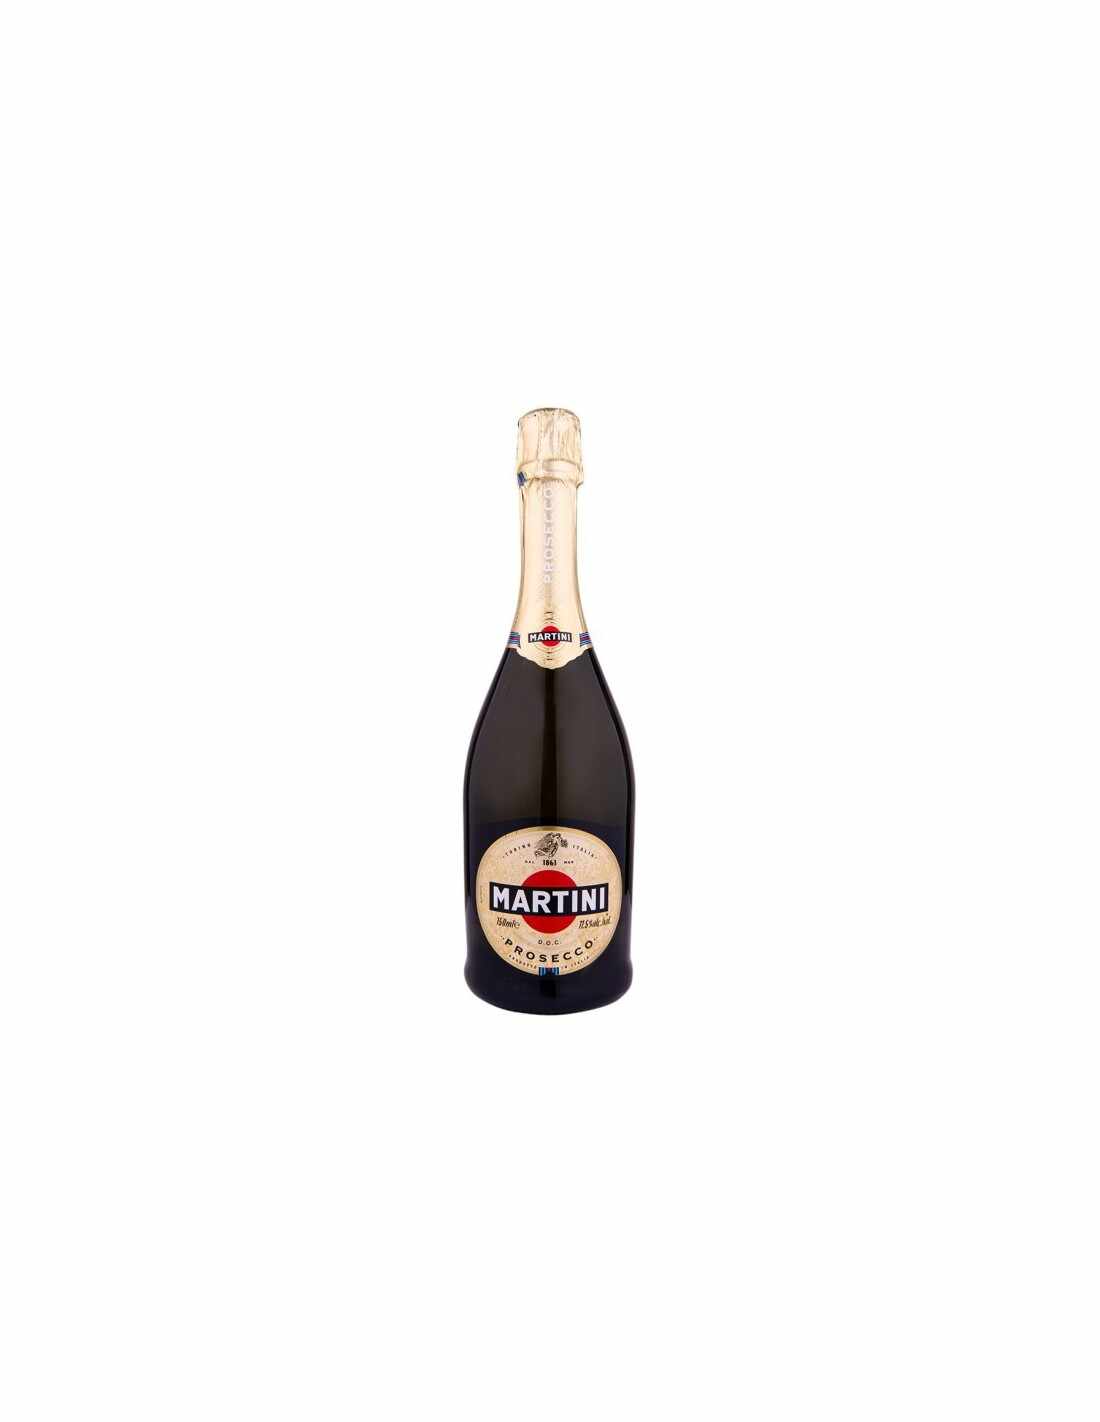 Vin prosecco Martini Veneto, 0.75L, 11.5% alc., Italia